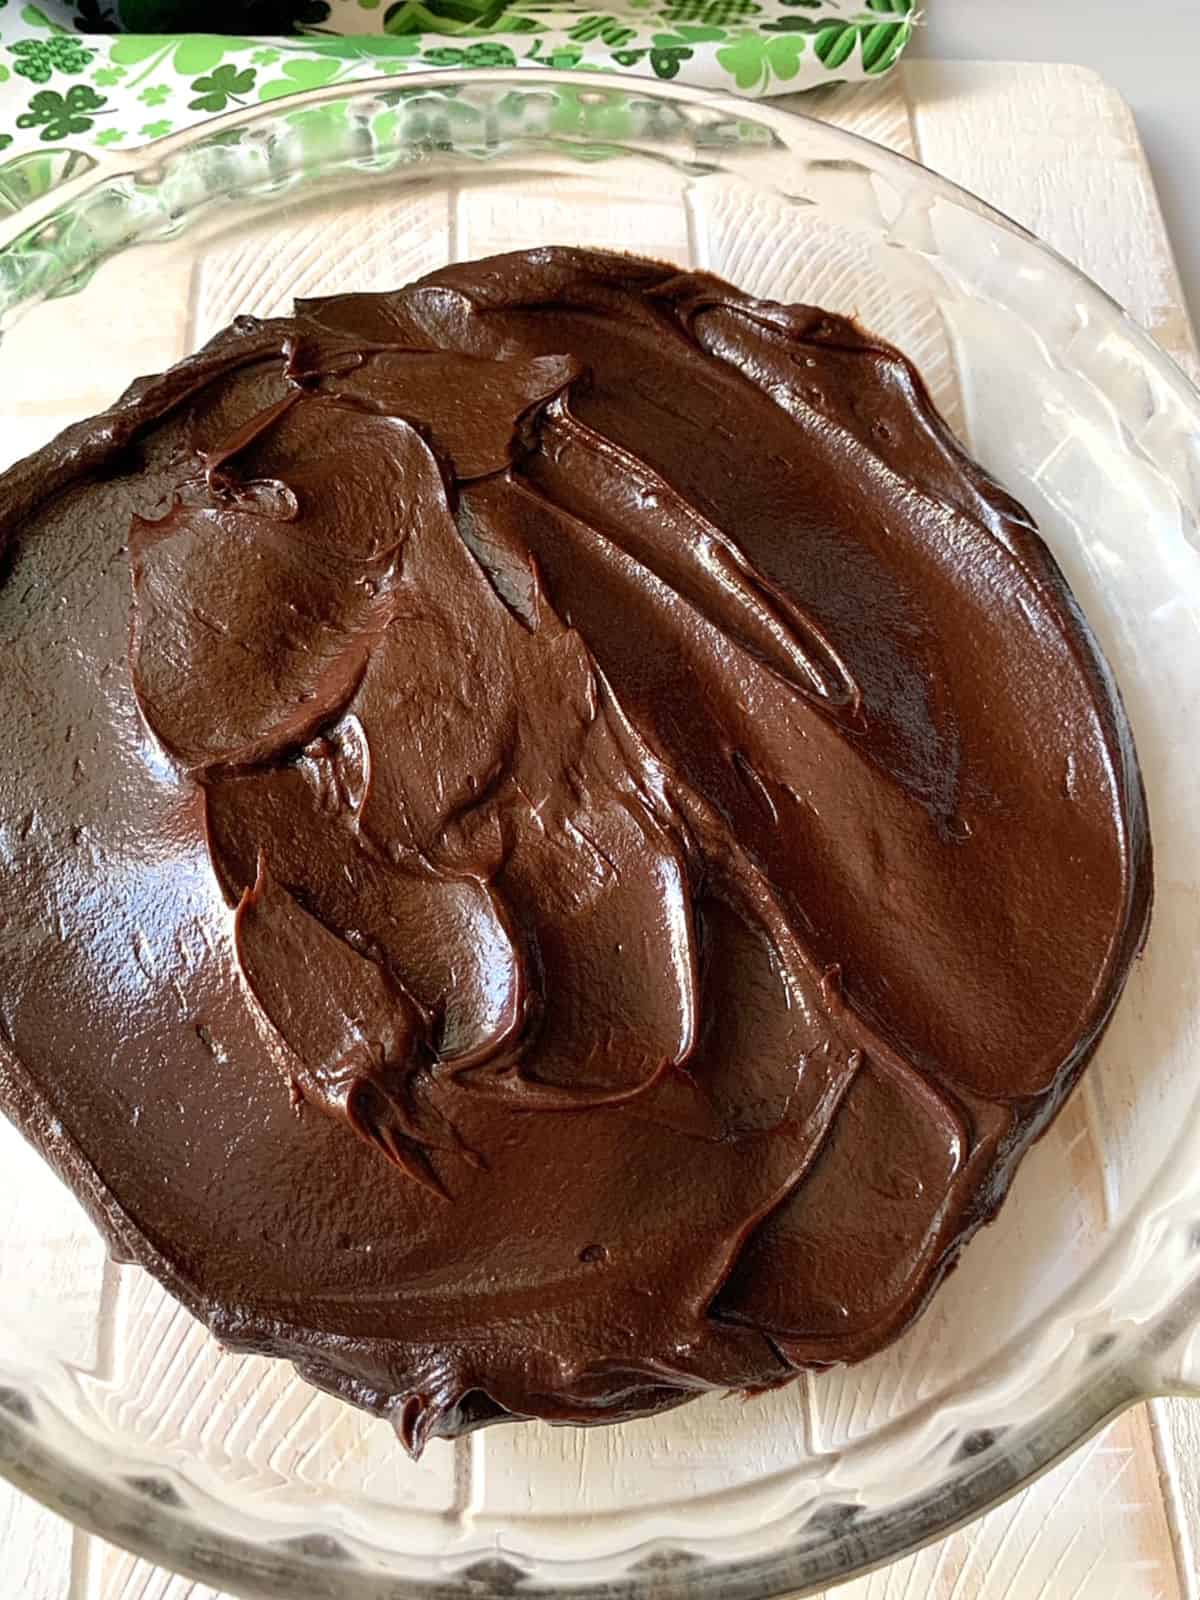 Chocolate ganache in a clear pie plate.